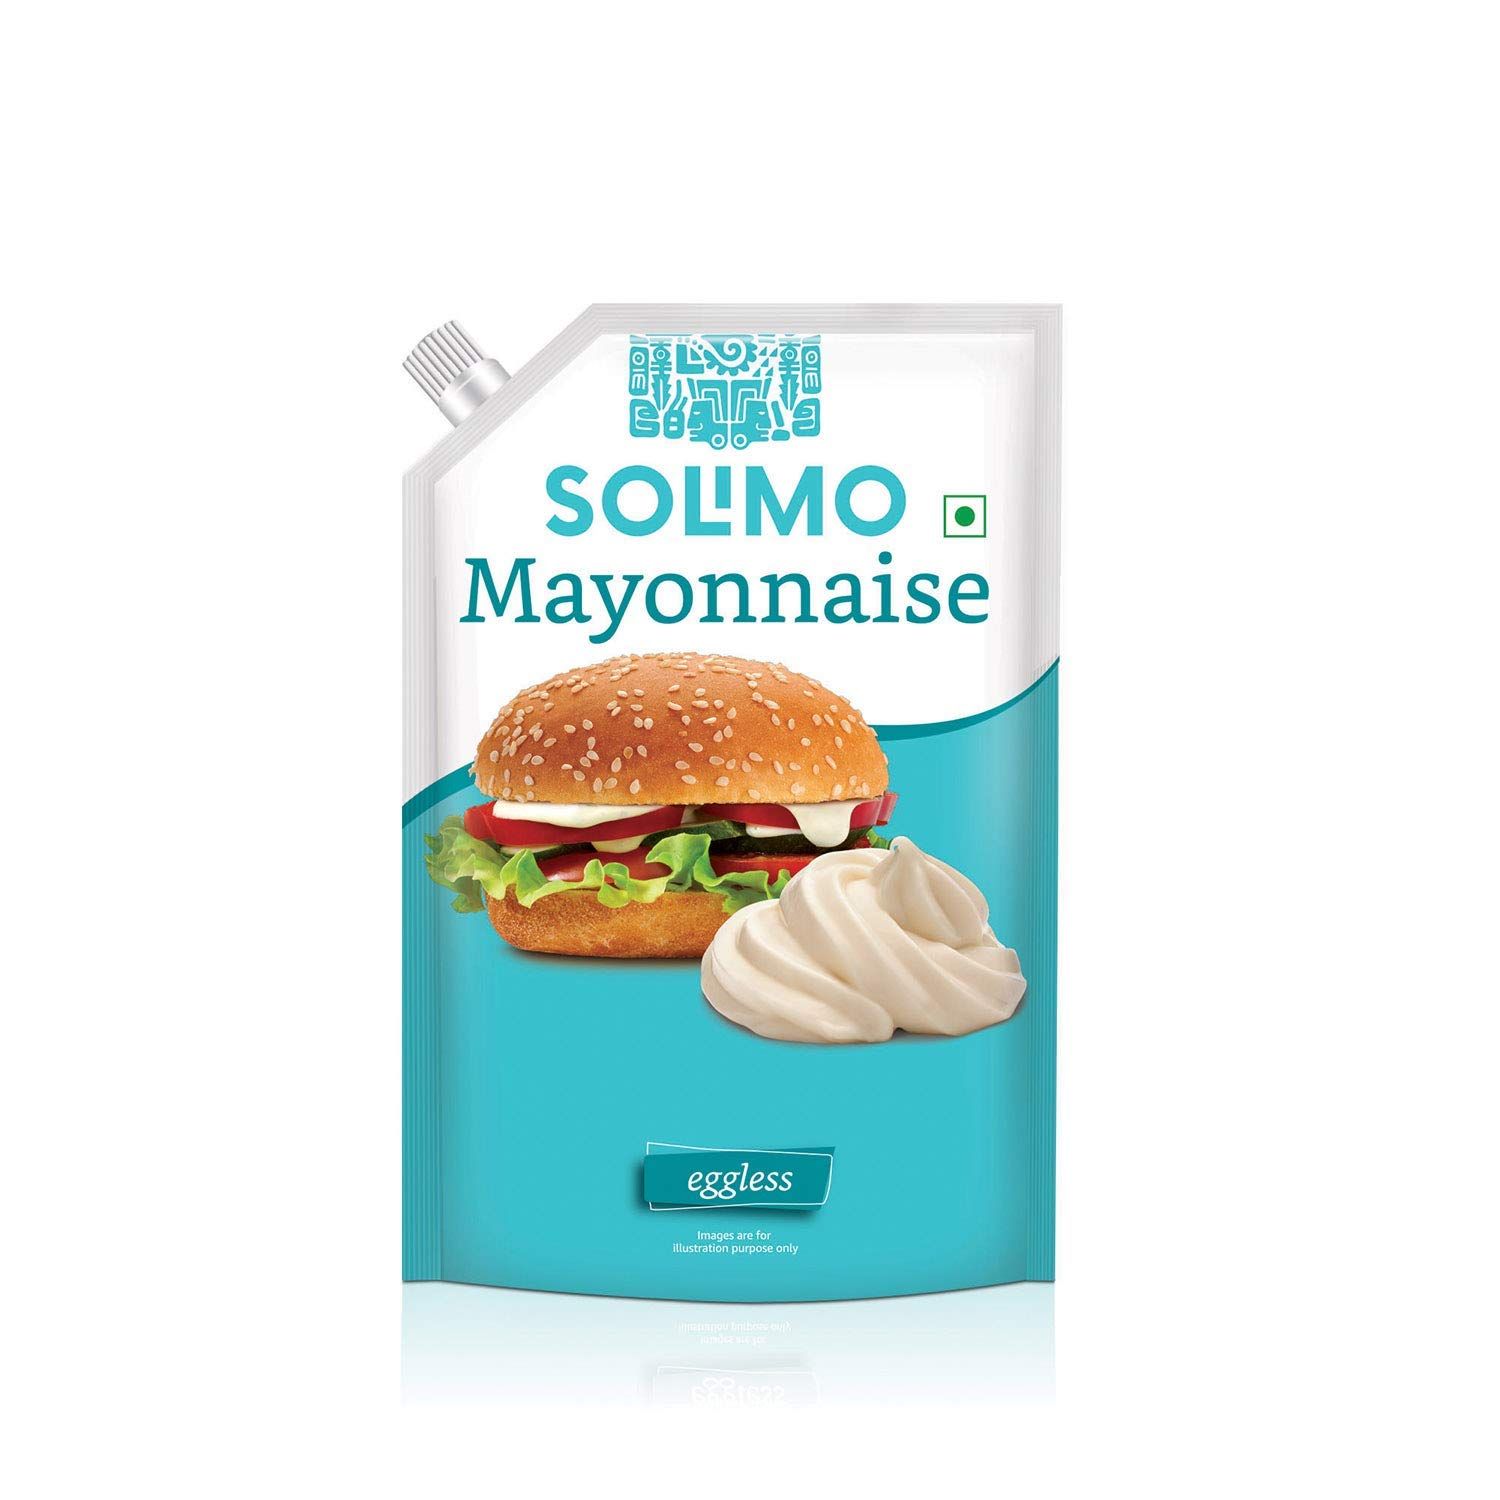 Amazon Brand Solimo Mayonnaise Image